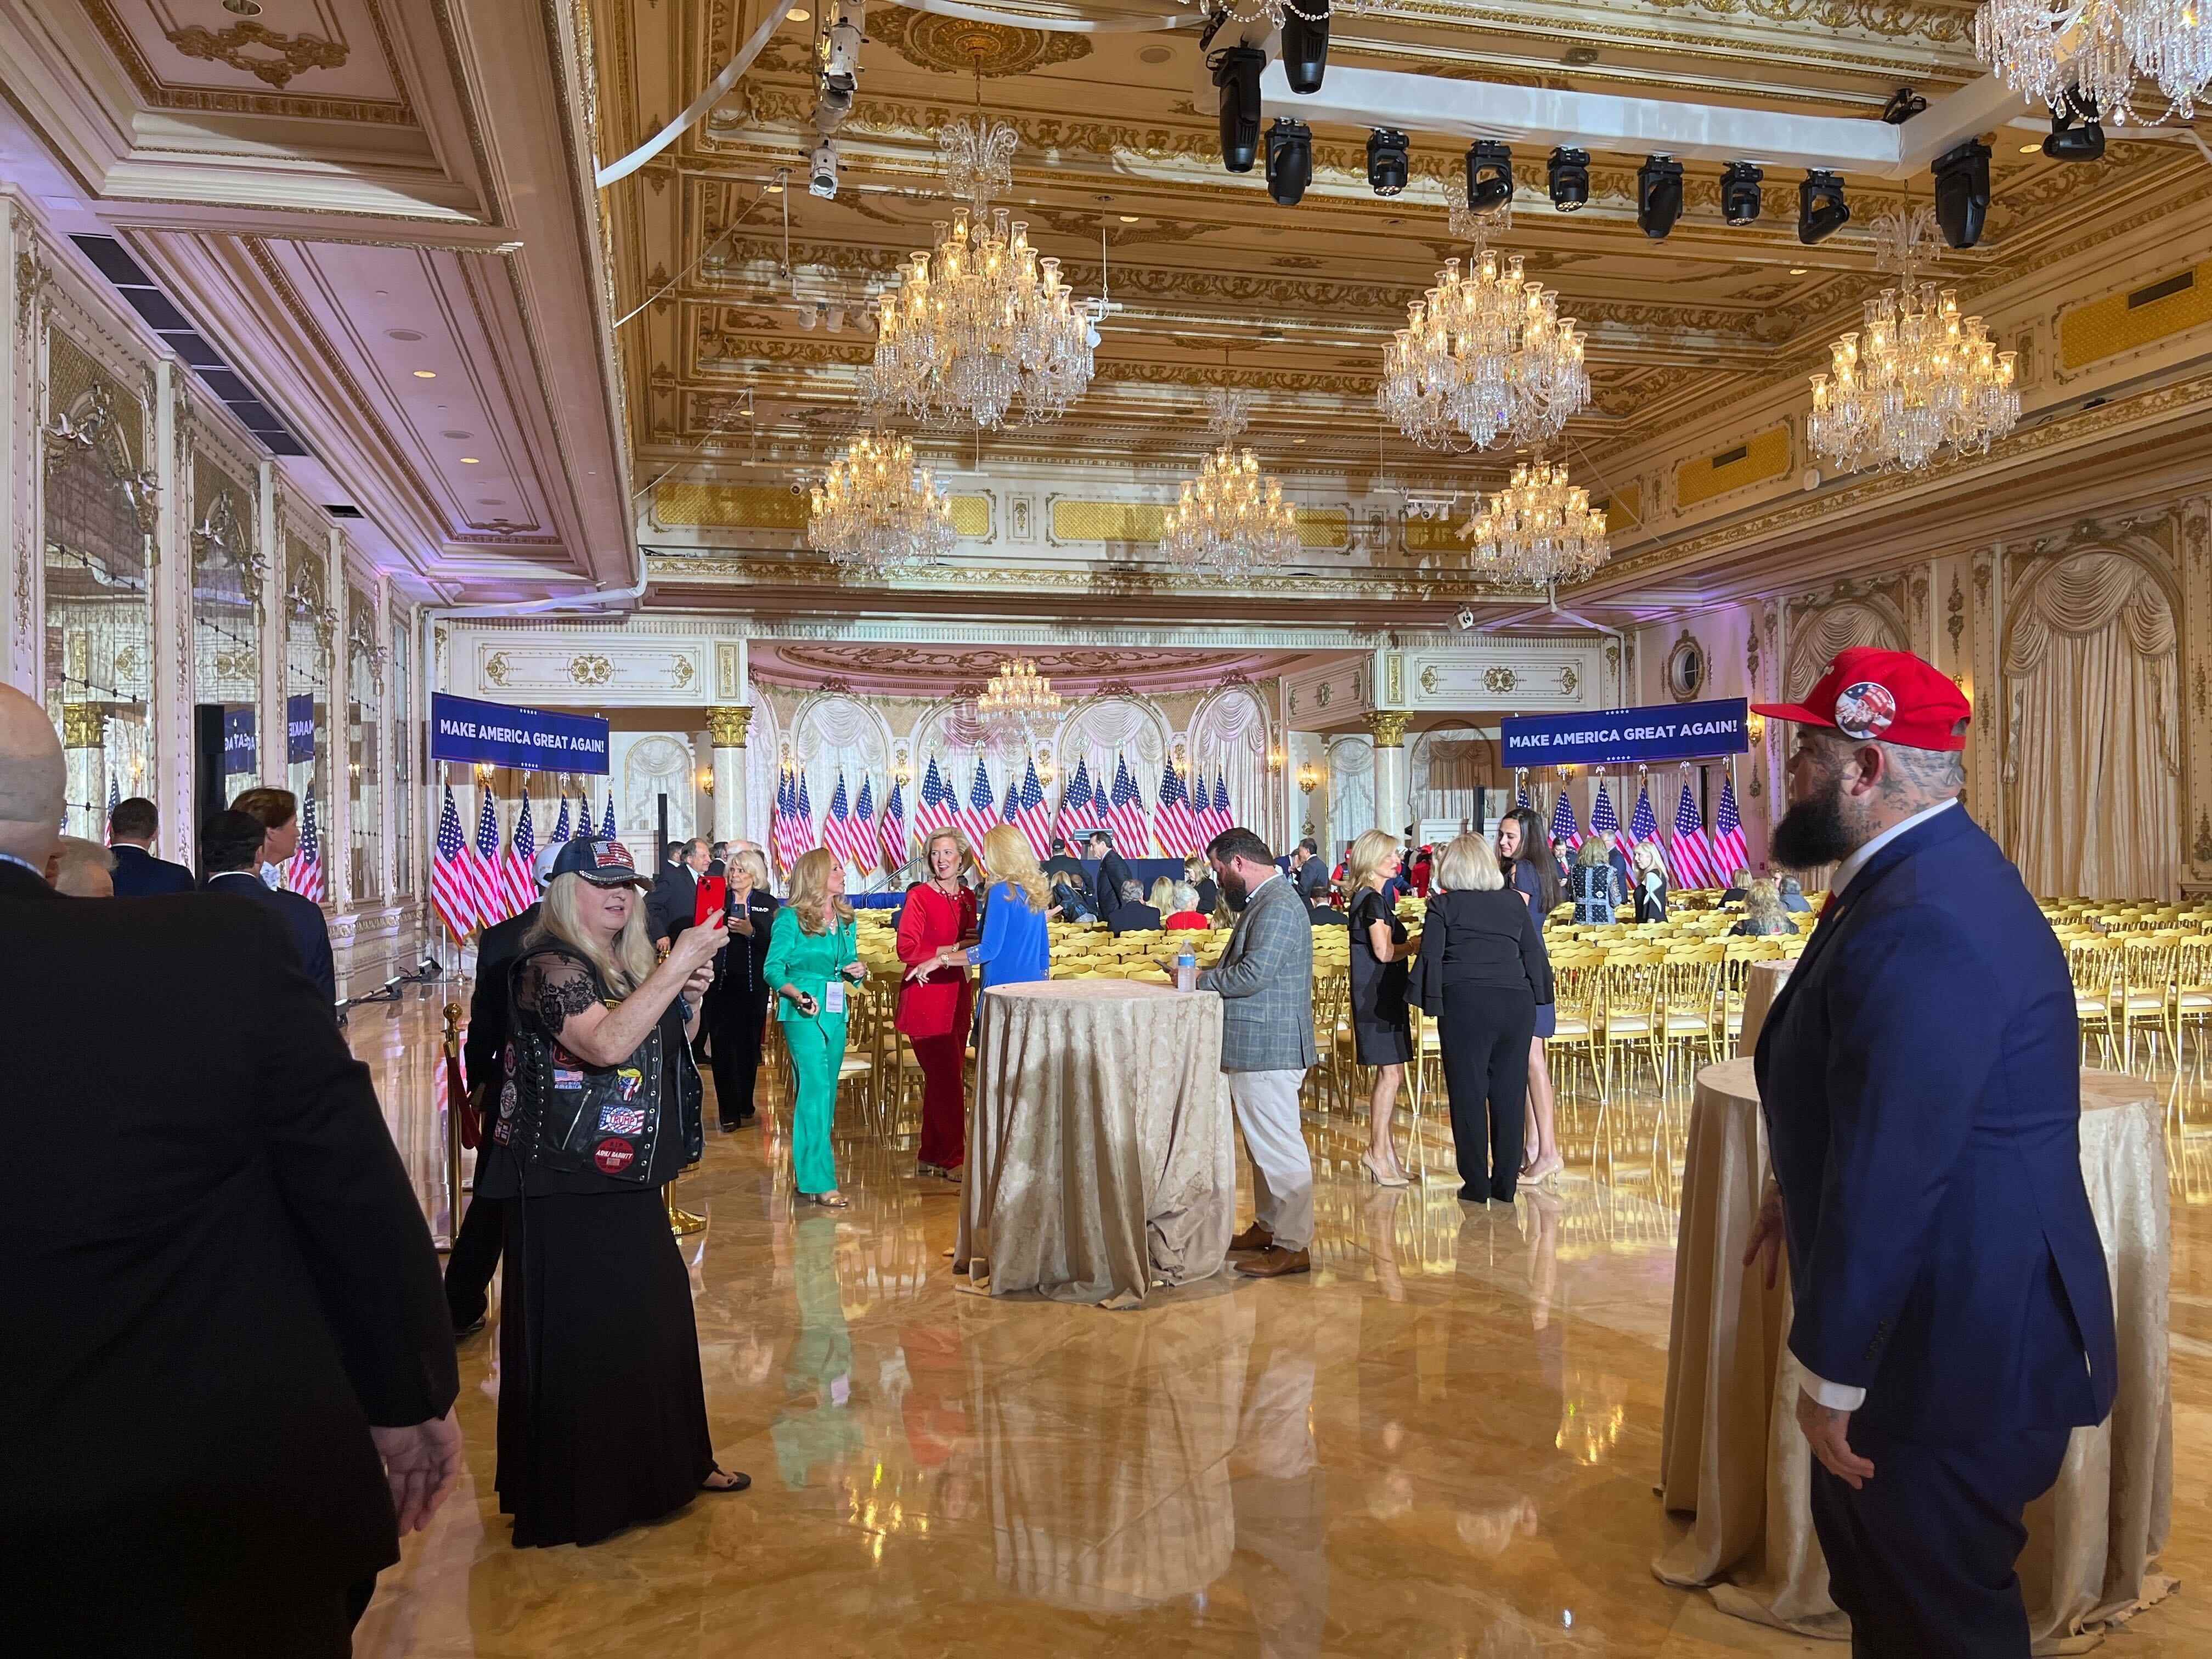 Eine Menschenmenge in Anzügen und Kleidern in einem goldenen Ballsaal